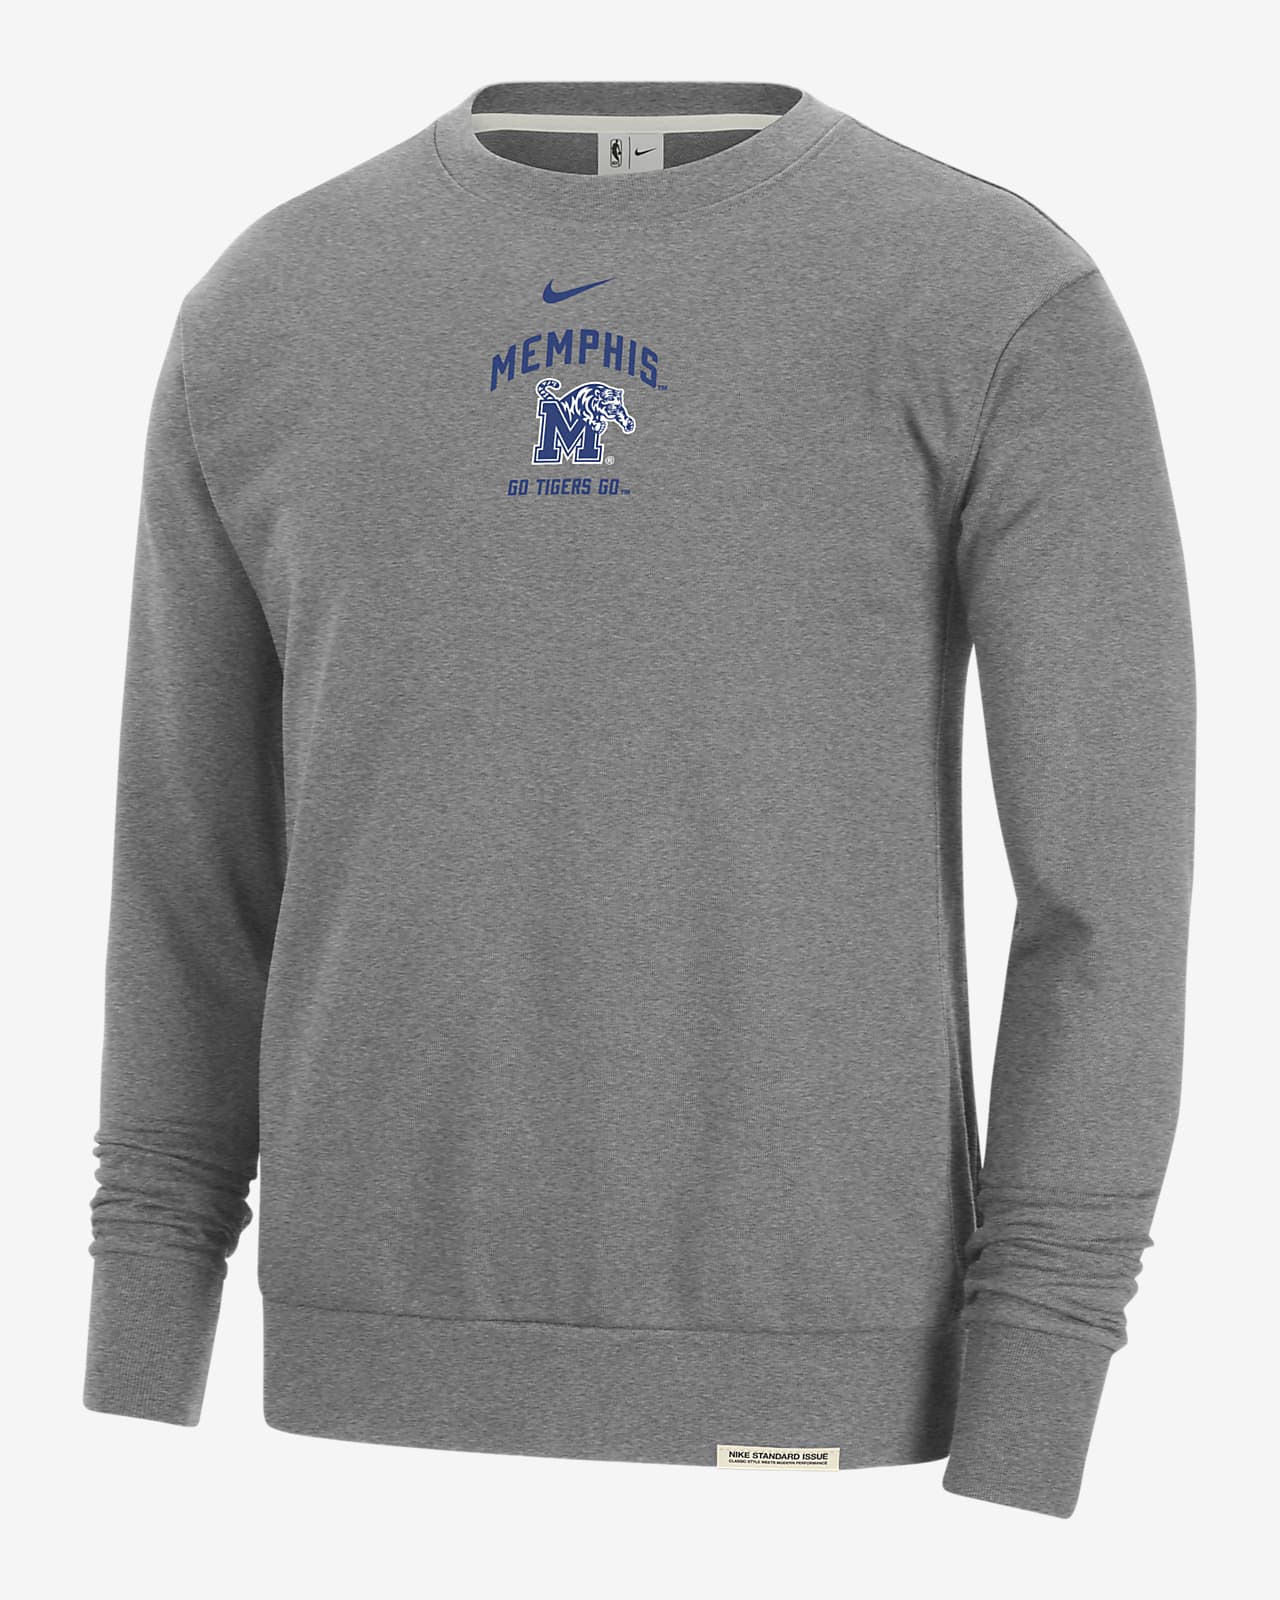 Memphis Standard Issue Men's Nike College Fleece Crew-Neck Sweatshirt